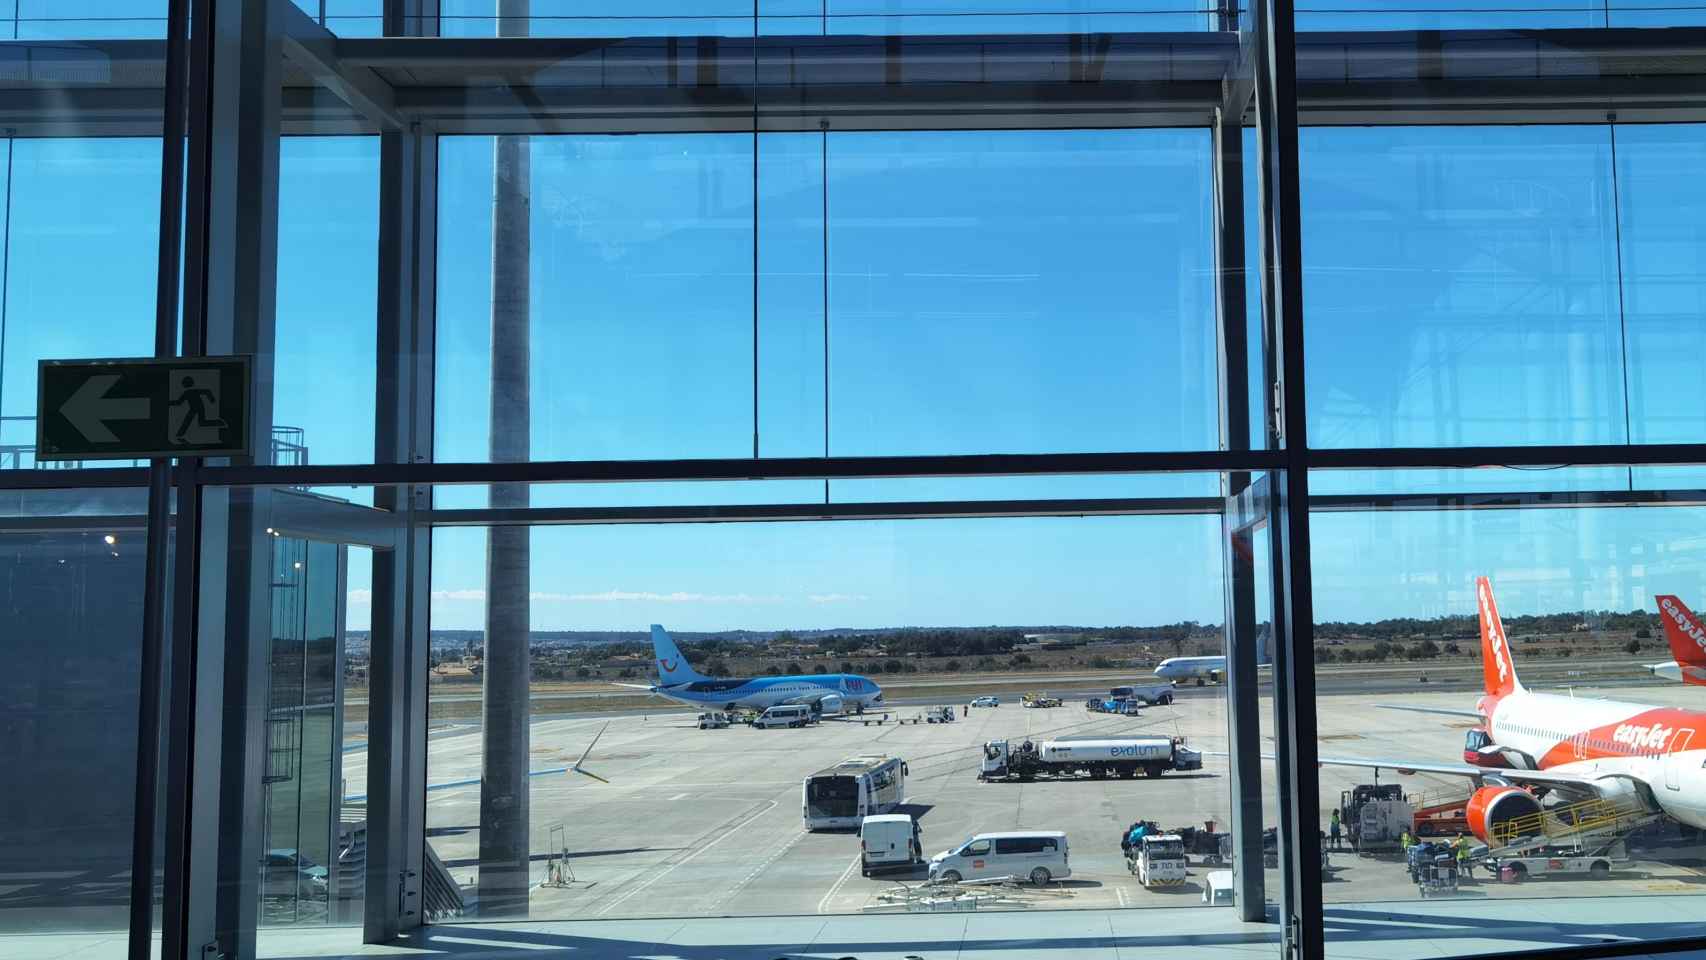 Una vista del aeropuerto de Alicante - Elche Miguel Hernández.